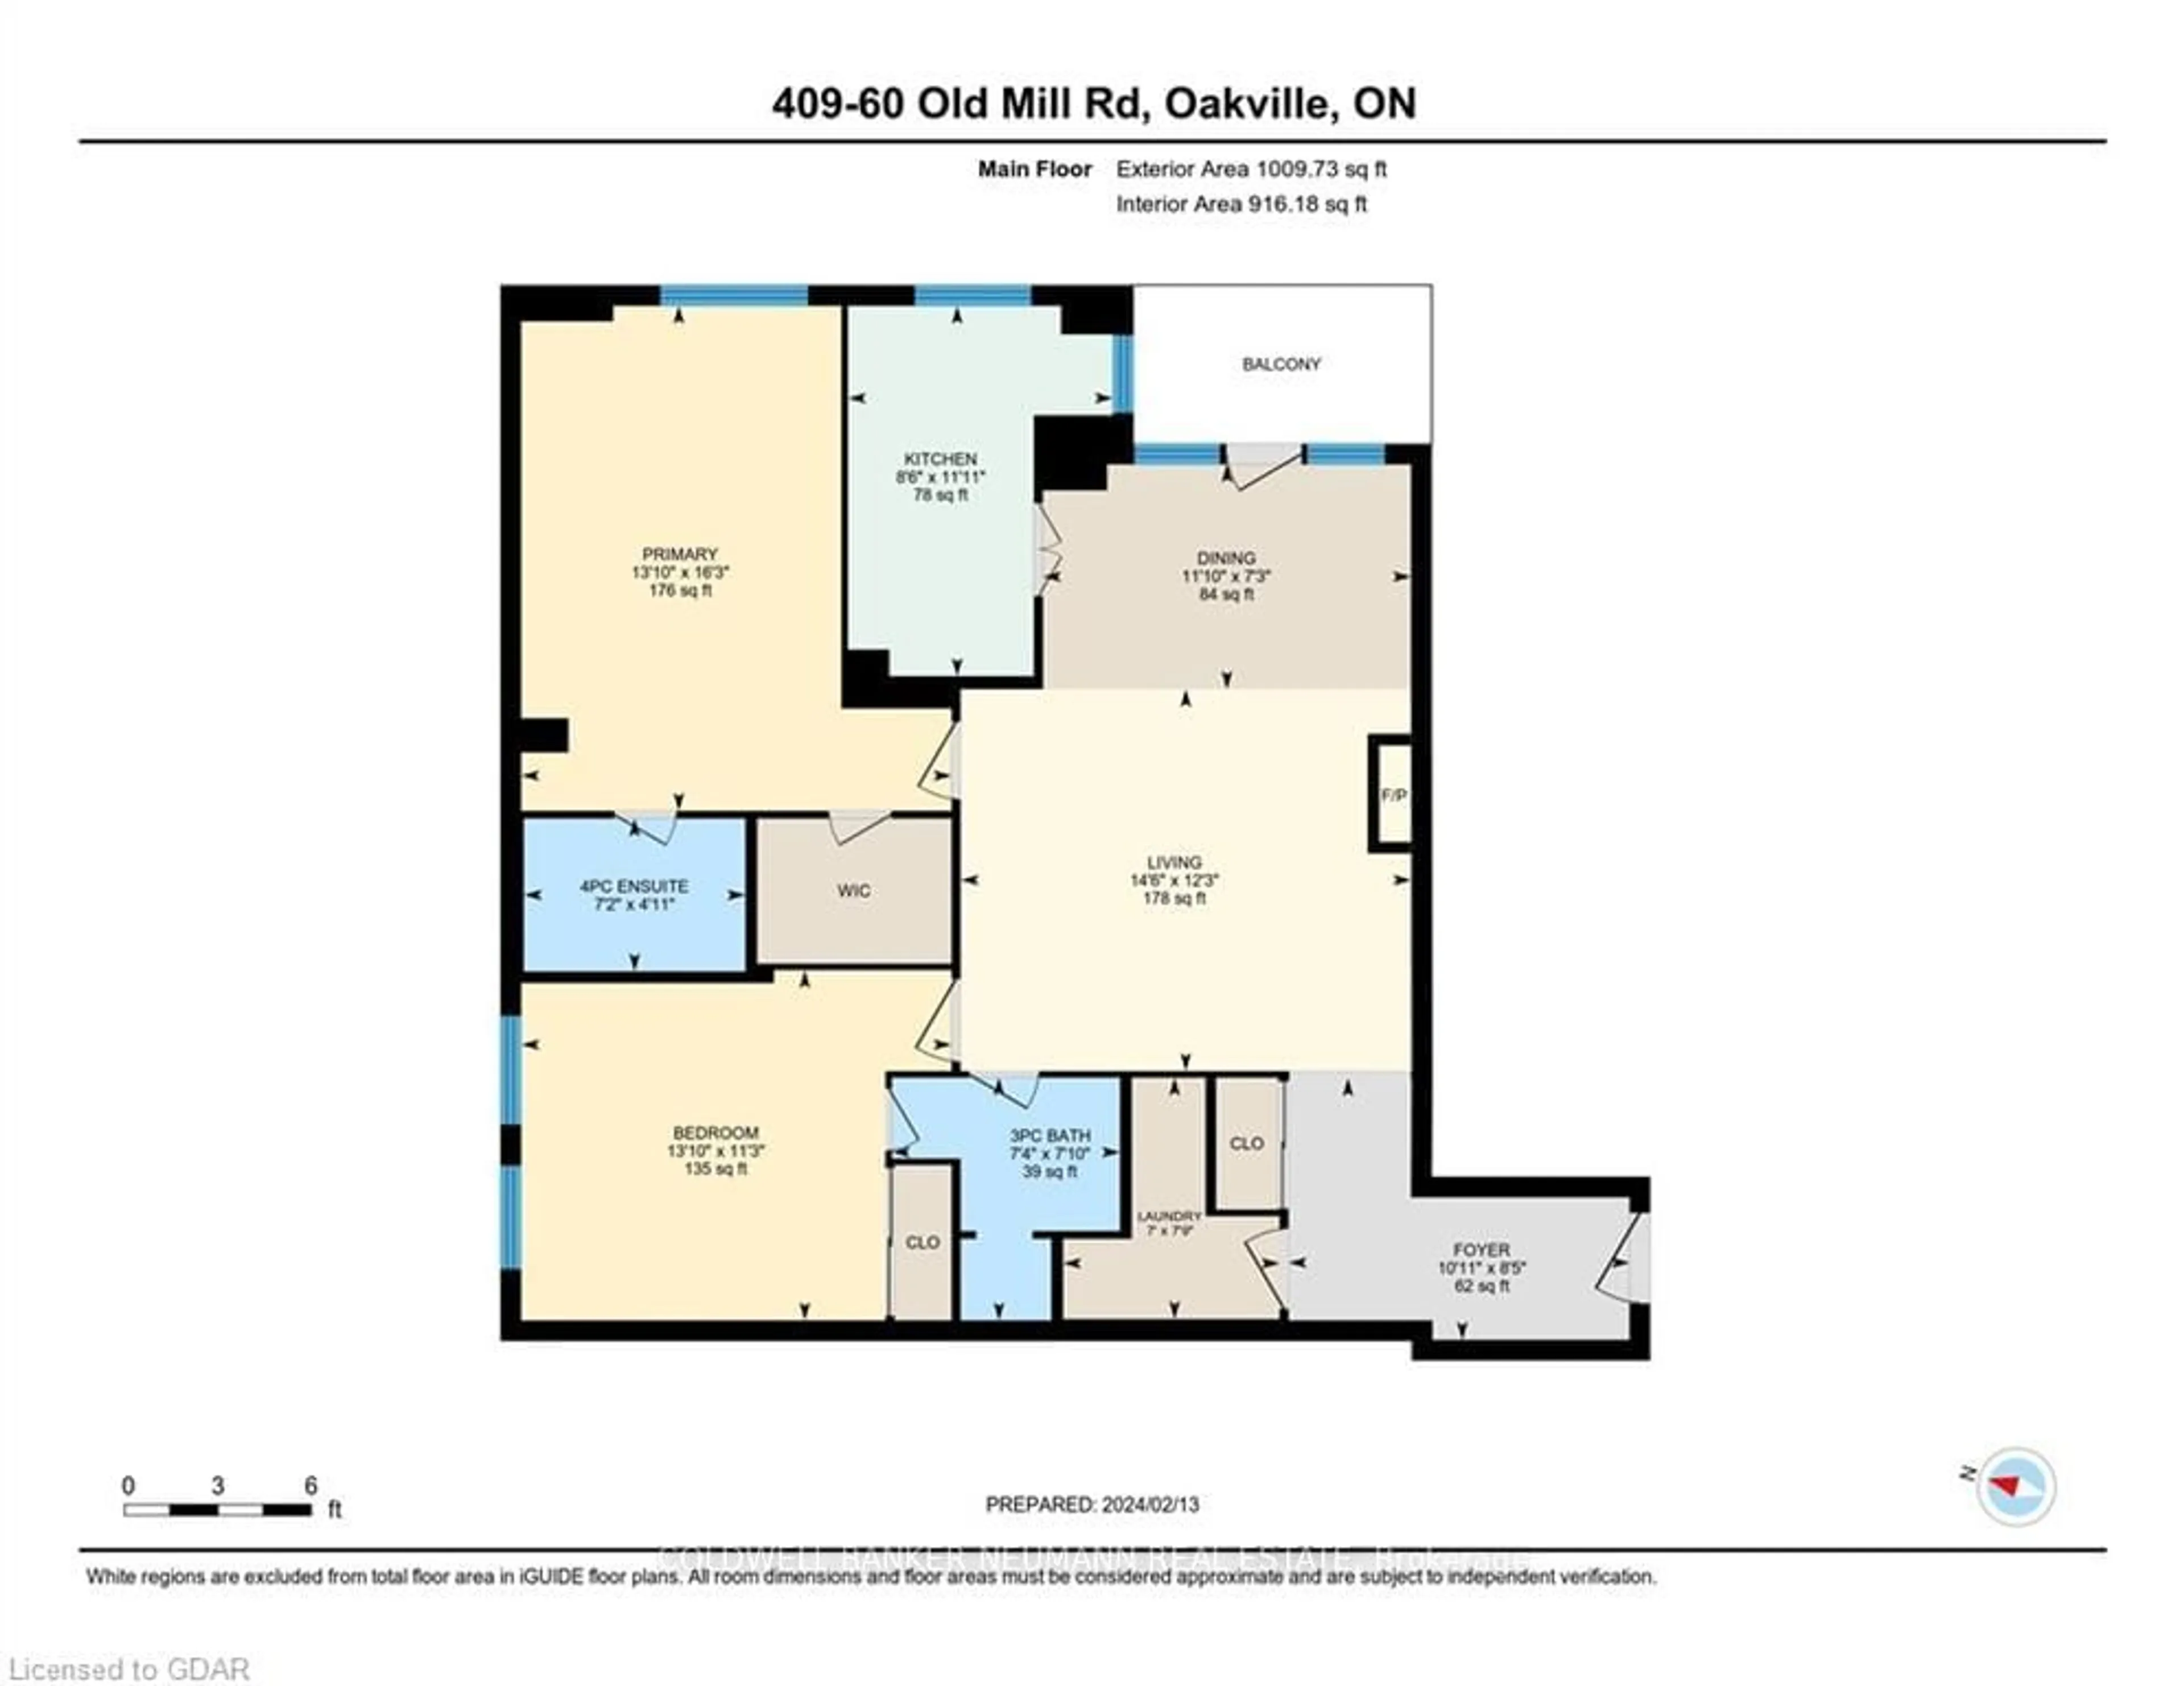 Floor plan for 60 Old Mill Rd #409, Oakville Ontario L6J 7V9